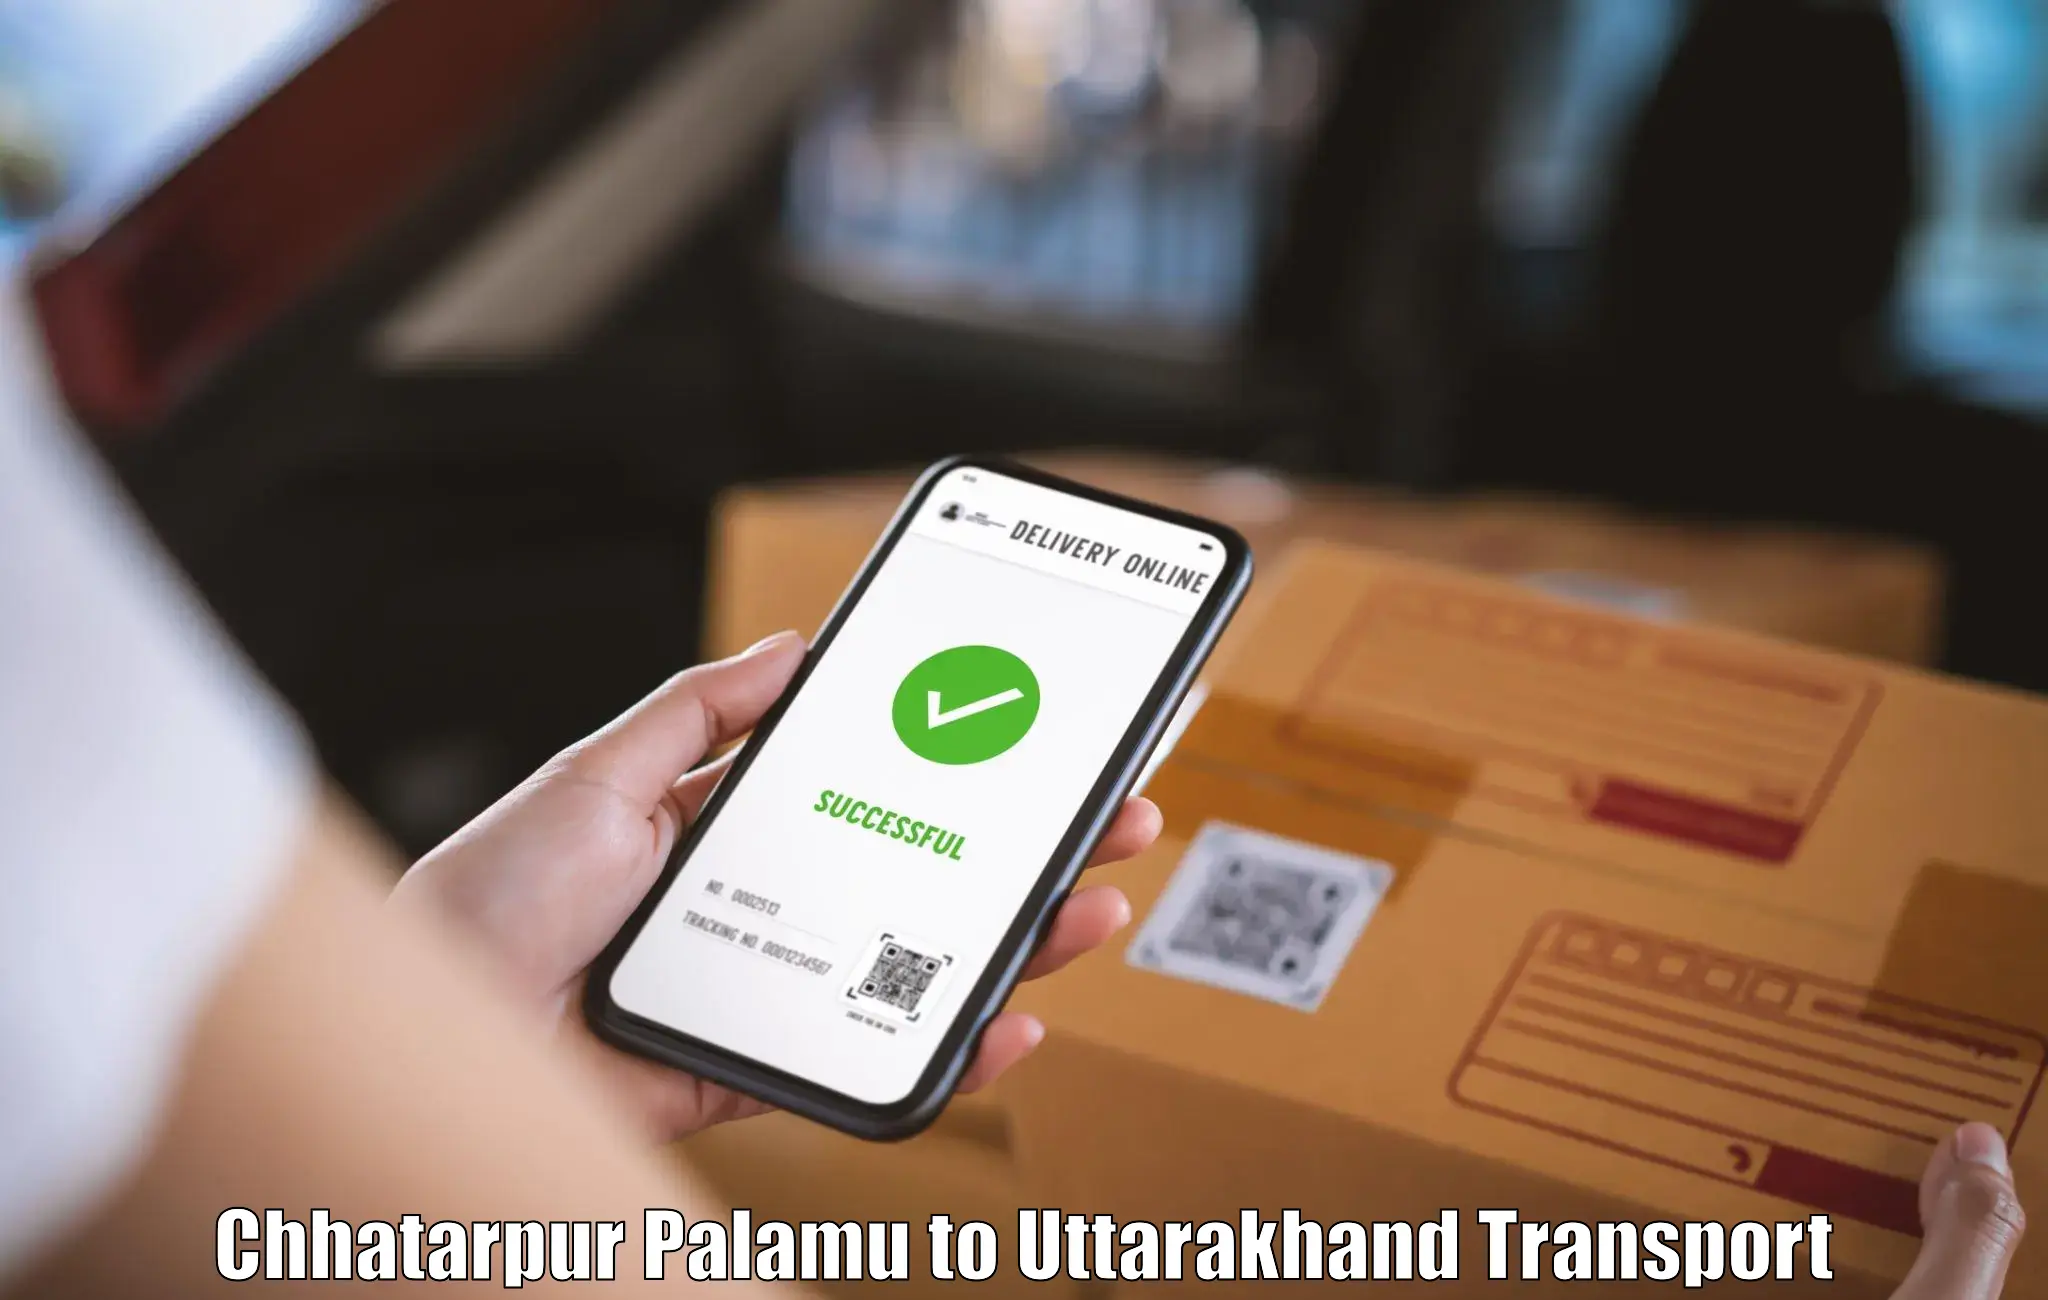 Transport shared services Chhatarpur Palamu to Uttarakhand